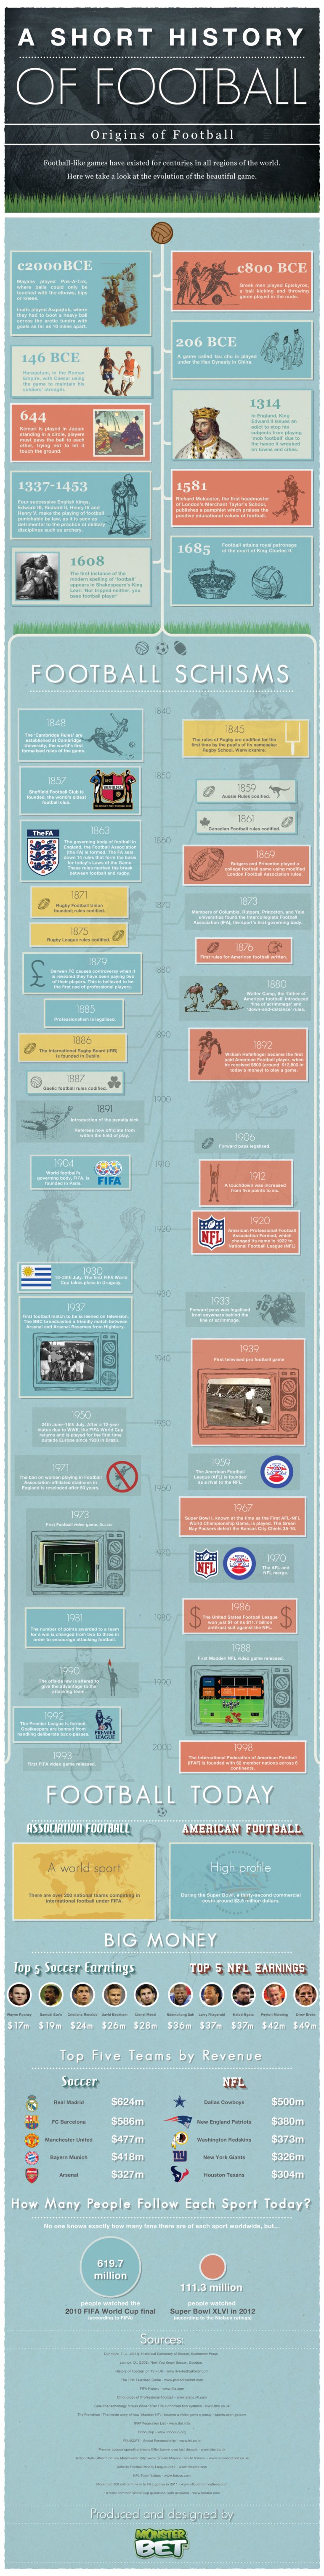 Football Historic Timeline